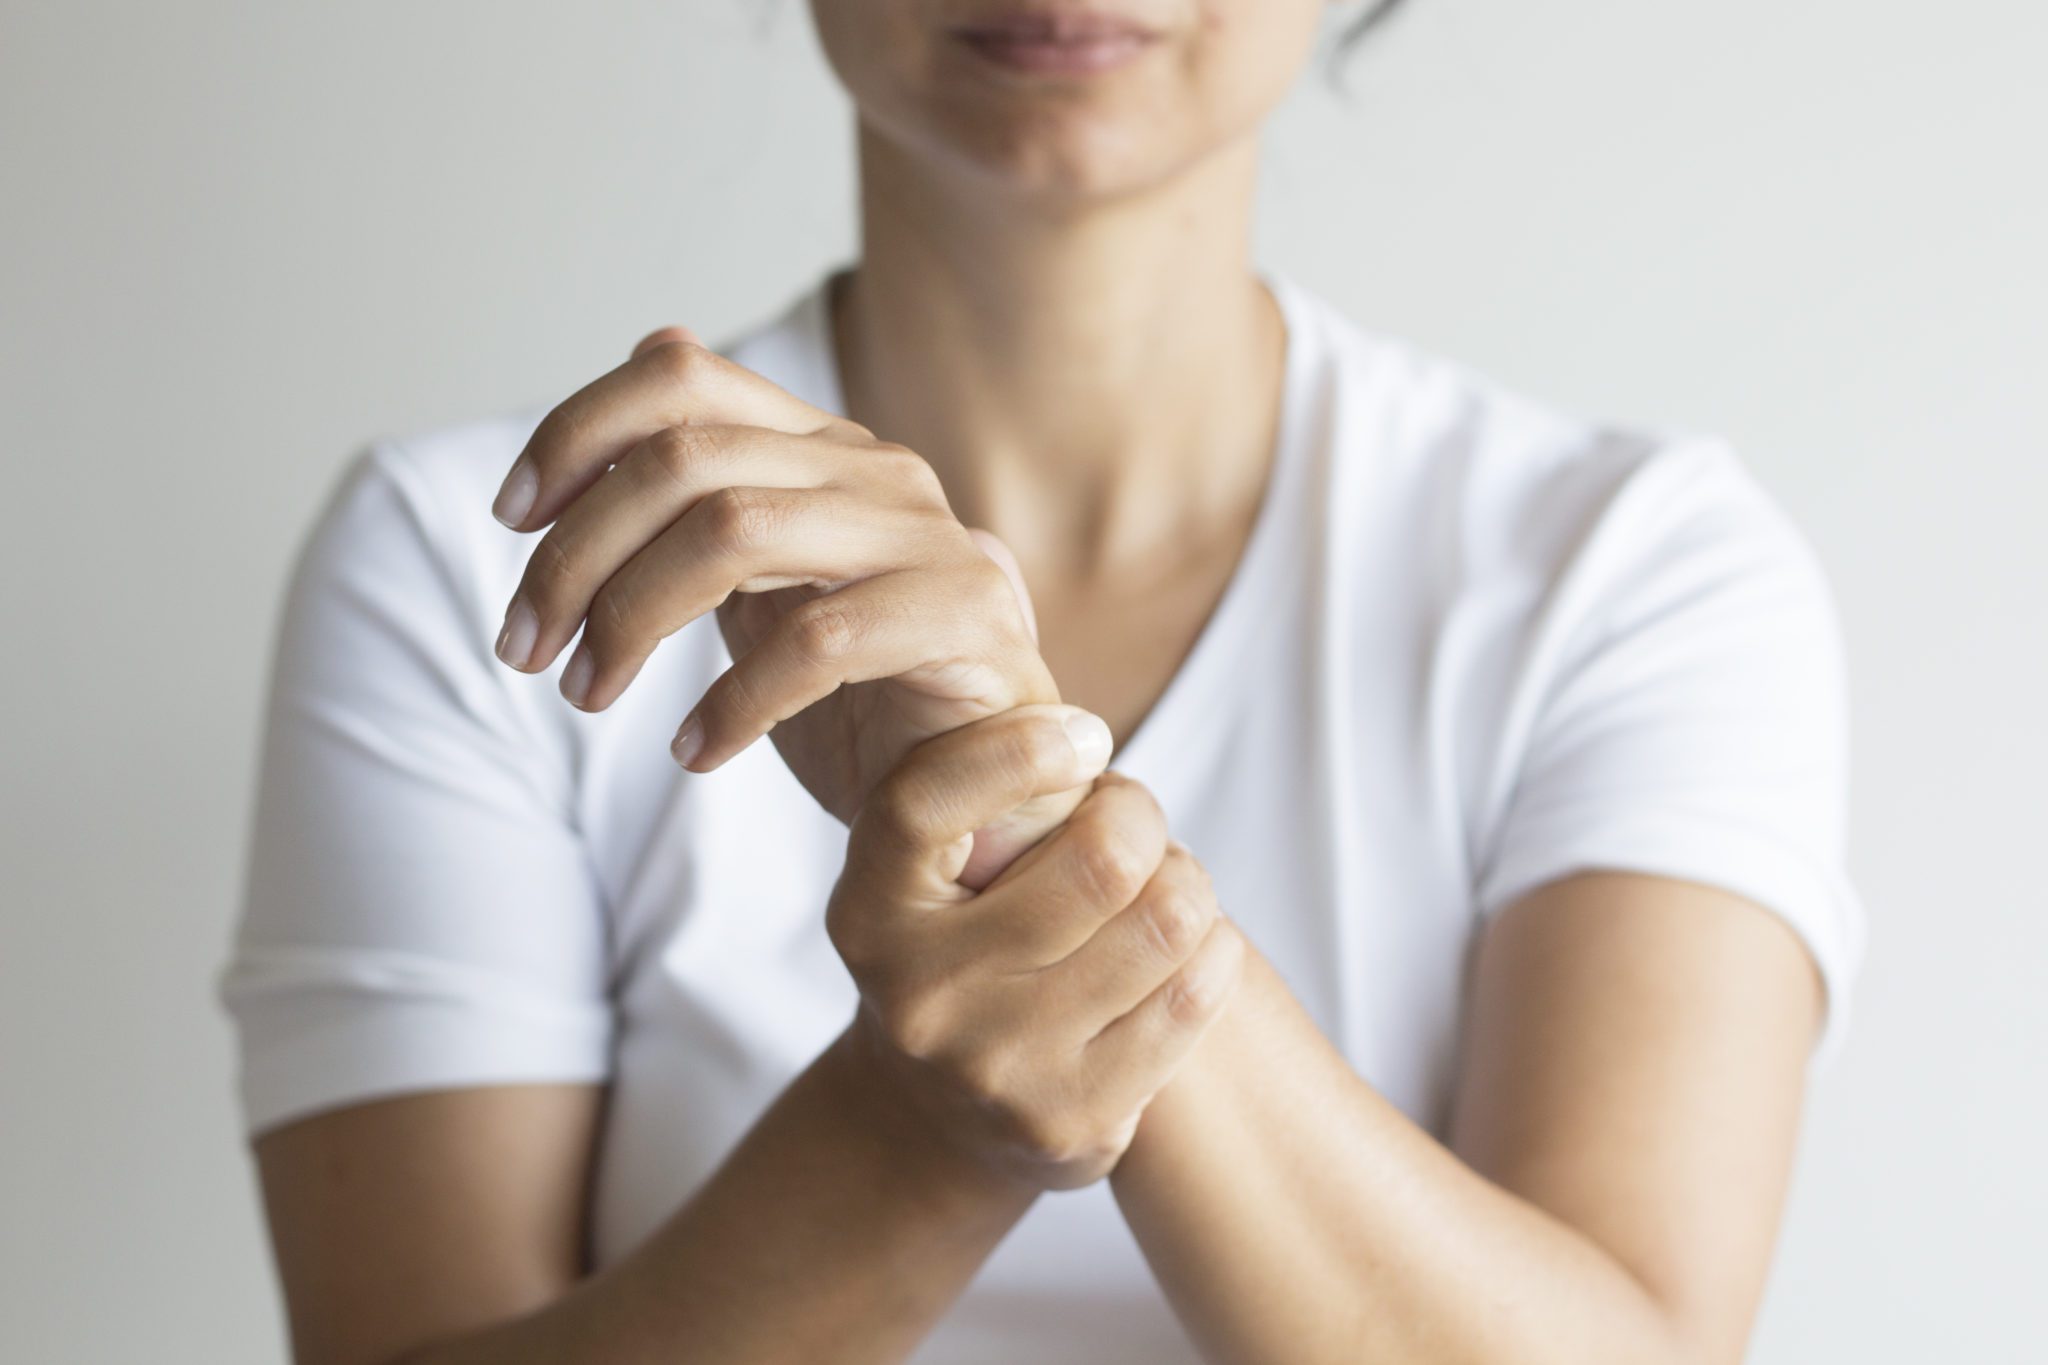 La artritis, entre el dolor y la incapacidad física